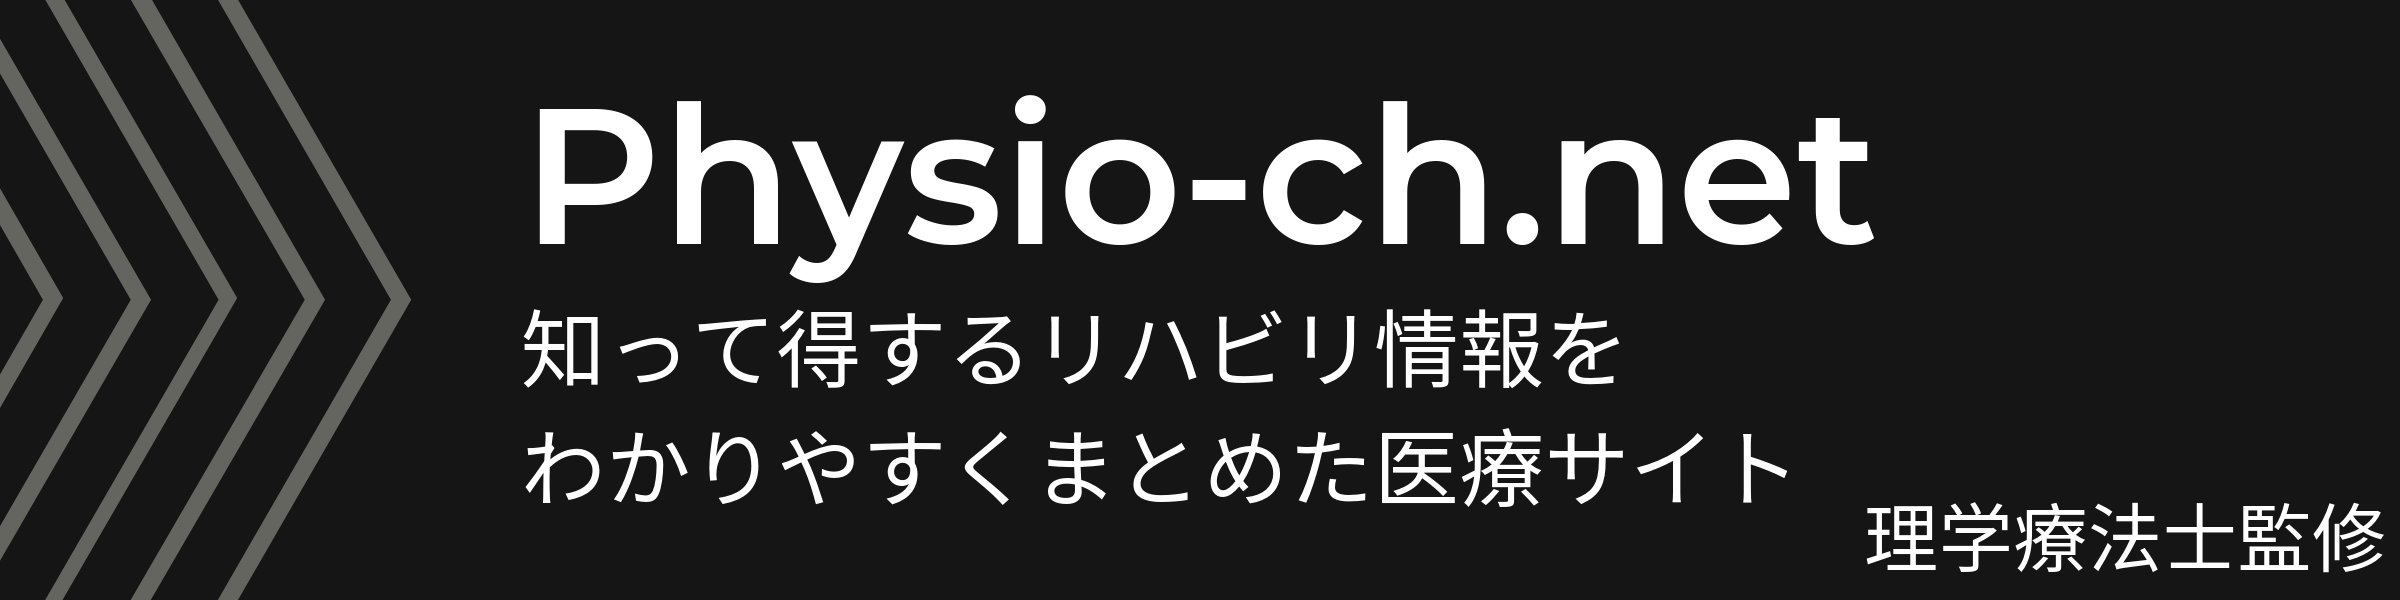 Physio-ch.net